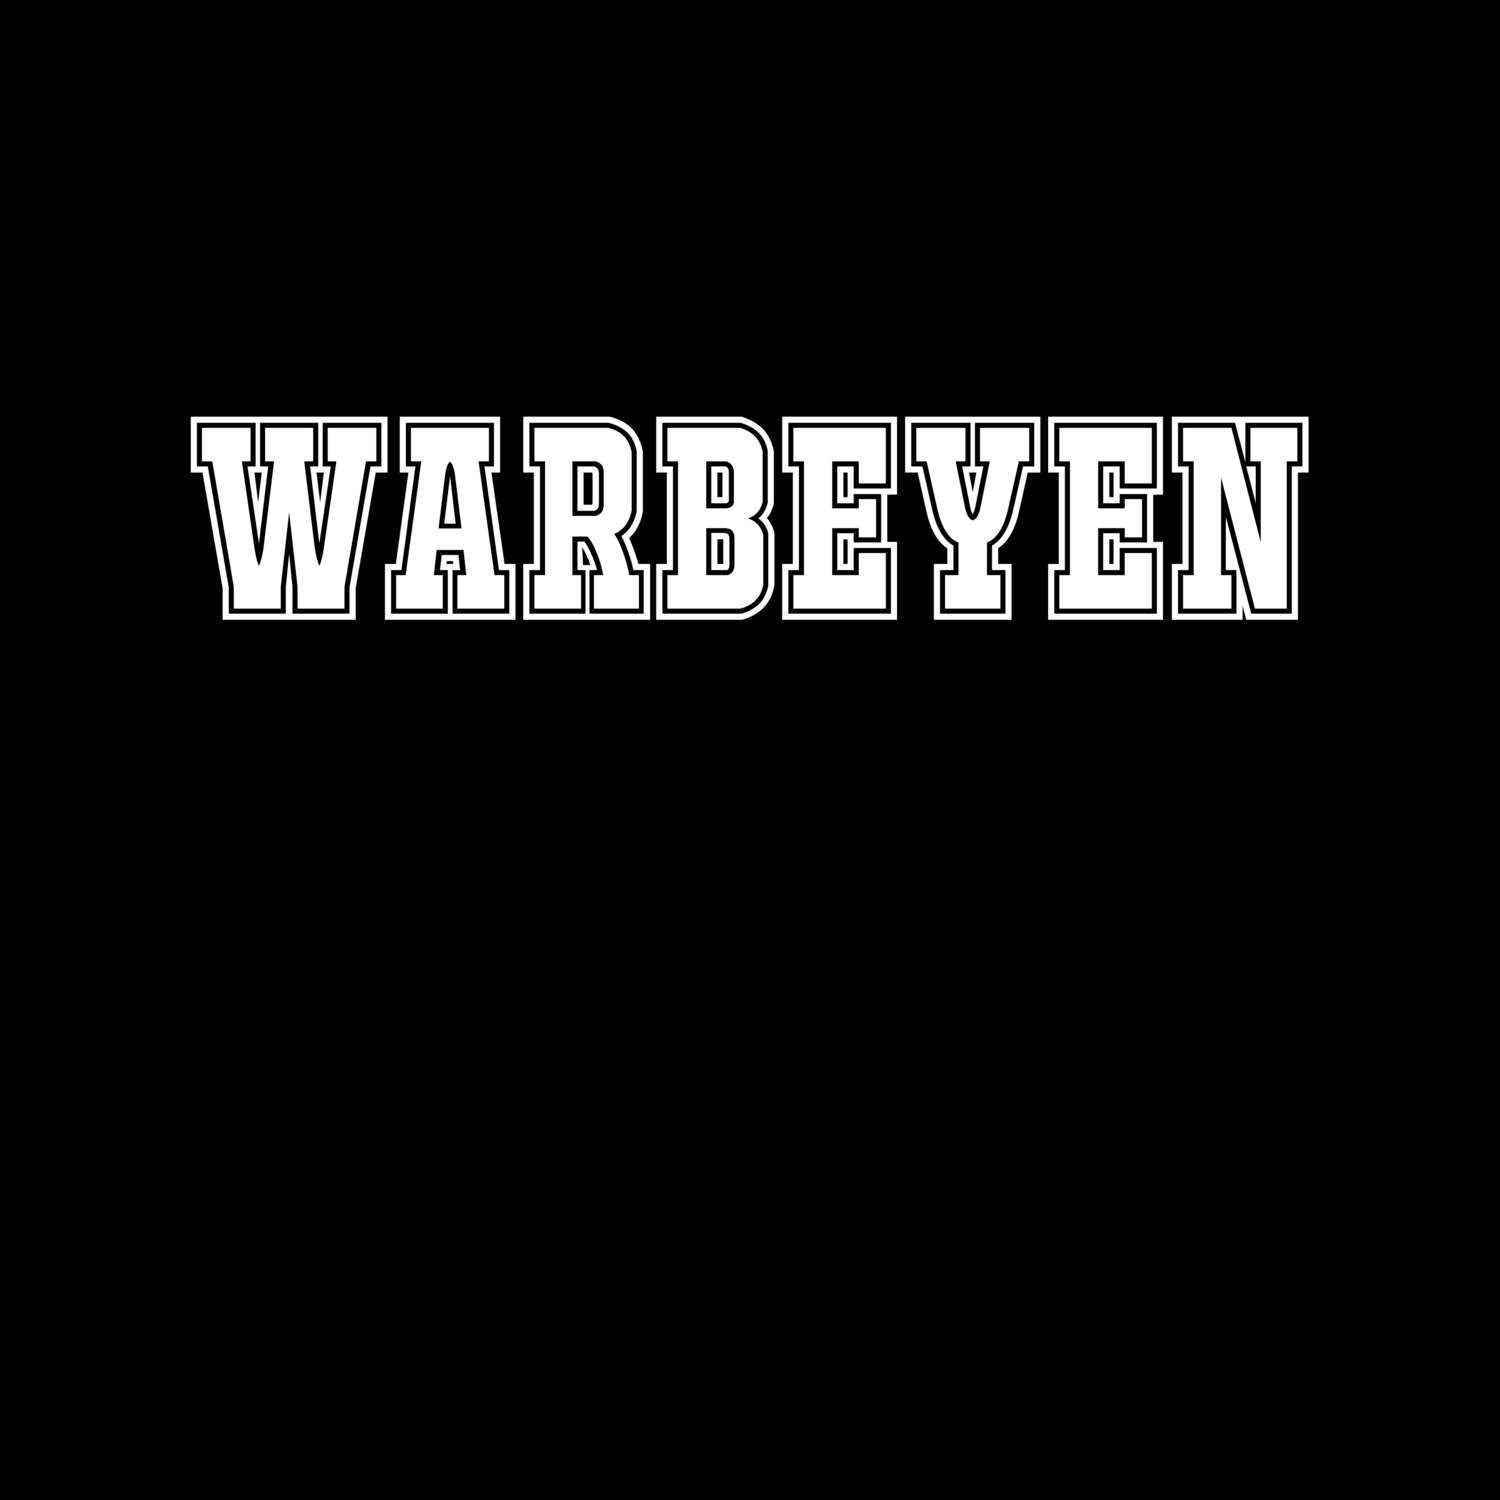 Warbeyen T-Shirt »Classic«